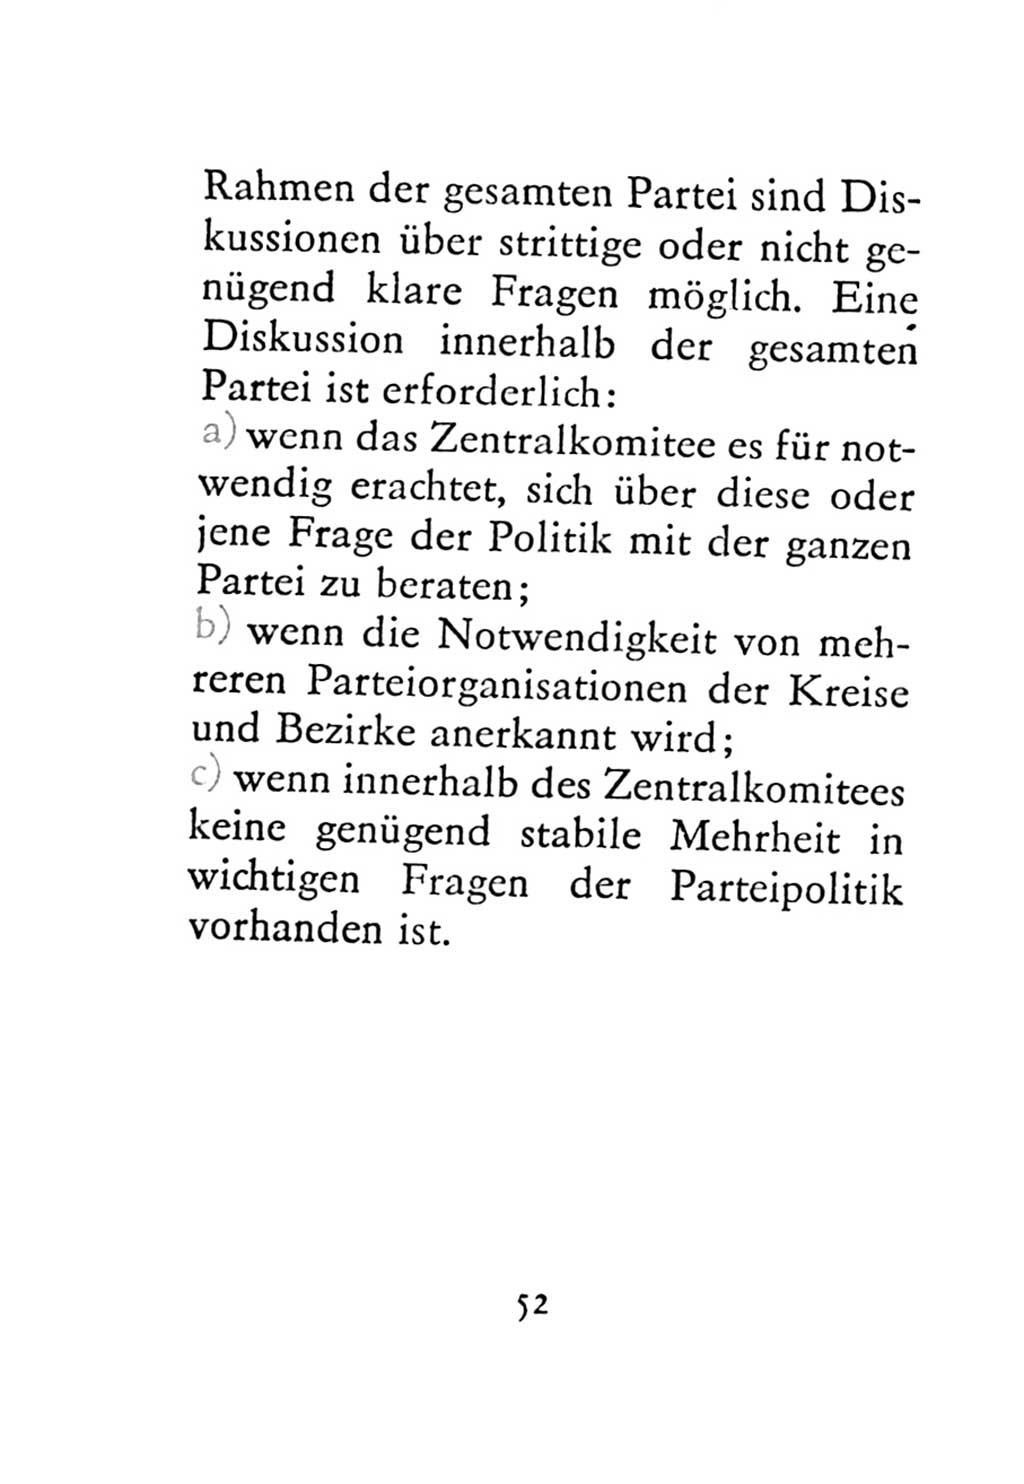 Statut der Sozialistischen Einheitspartei Deutschlands (SED) 1971, Seite 52 (St. SED DDR 1971, S. 52)